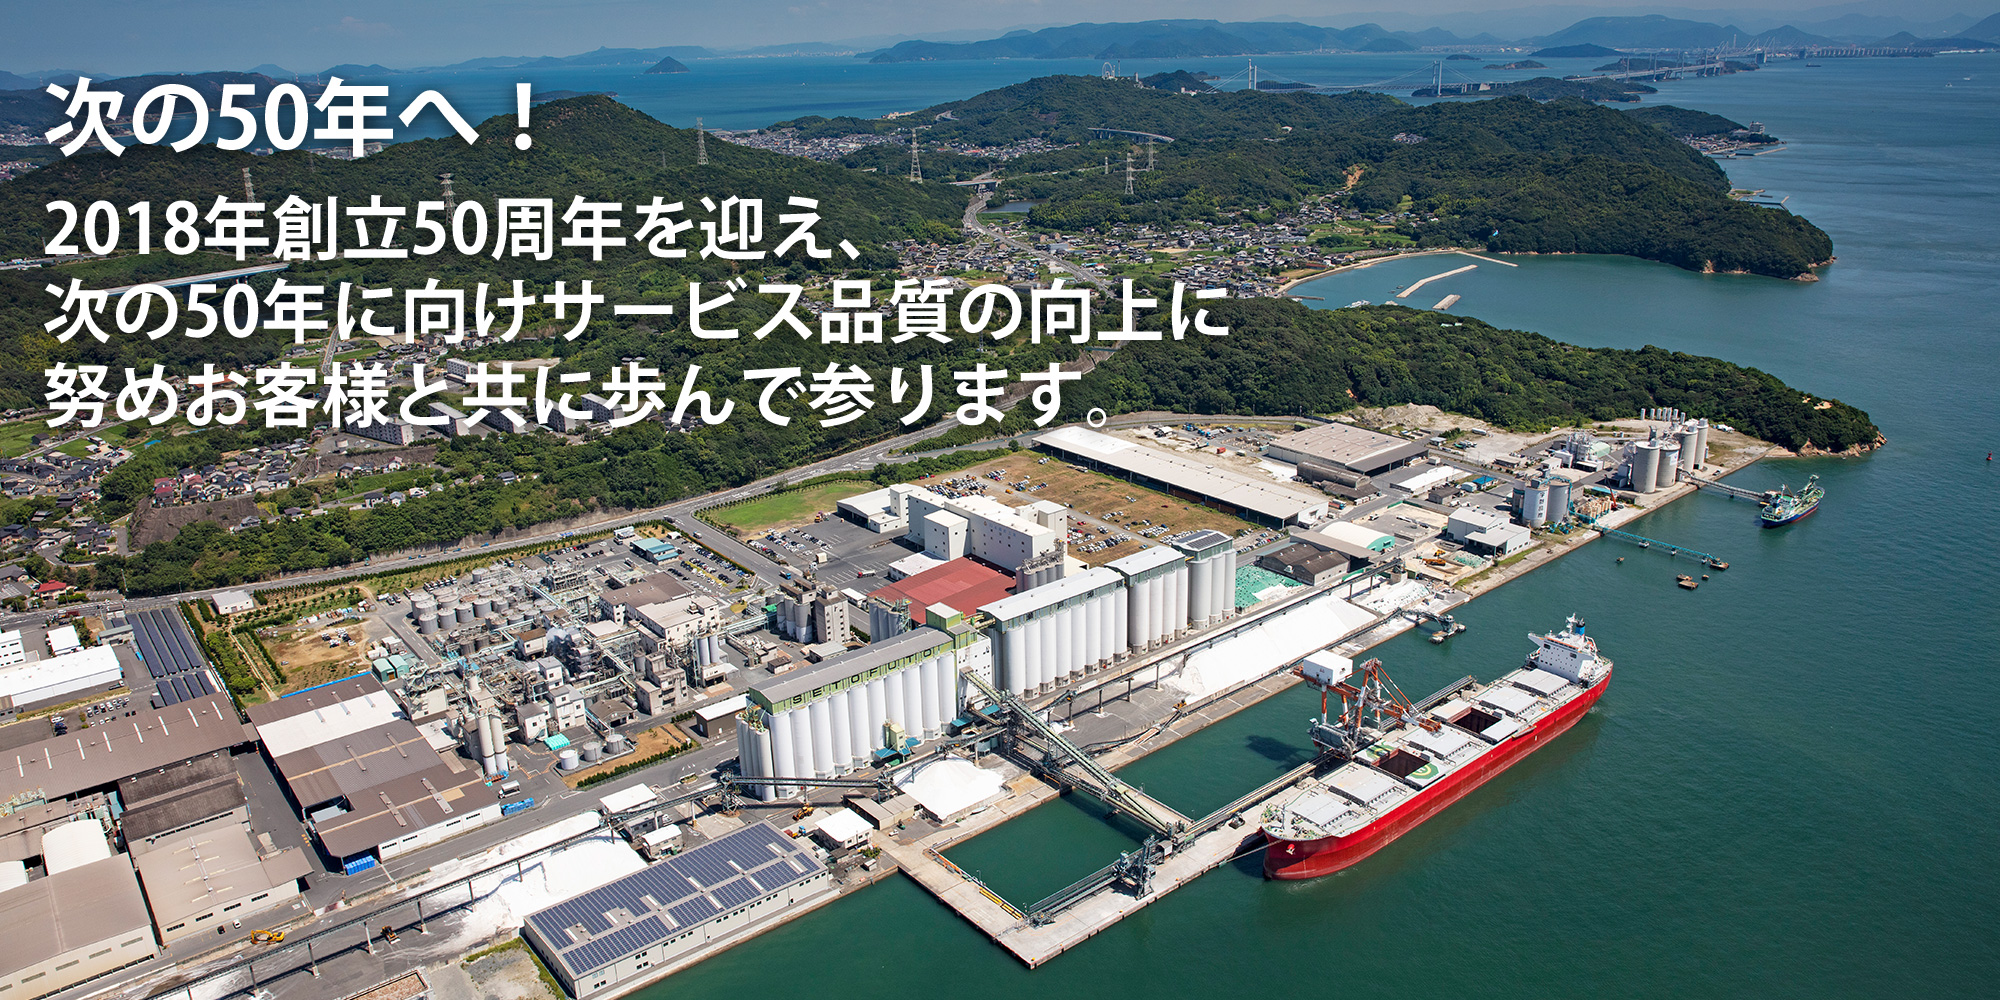 50年のその先へ / 瀬戸埠頭は2018年に創立50年を迎えた、西日本全域をカバーする三菱グループのターミナルロジスティクス会社です。